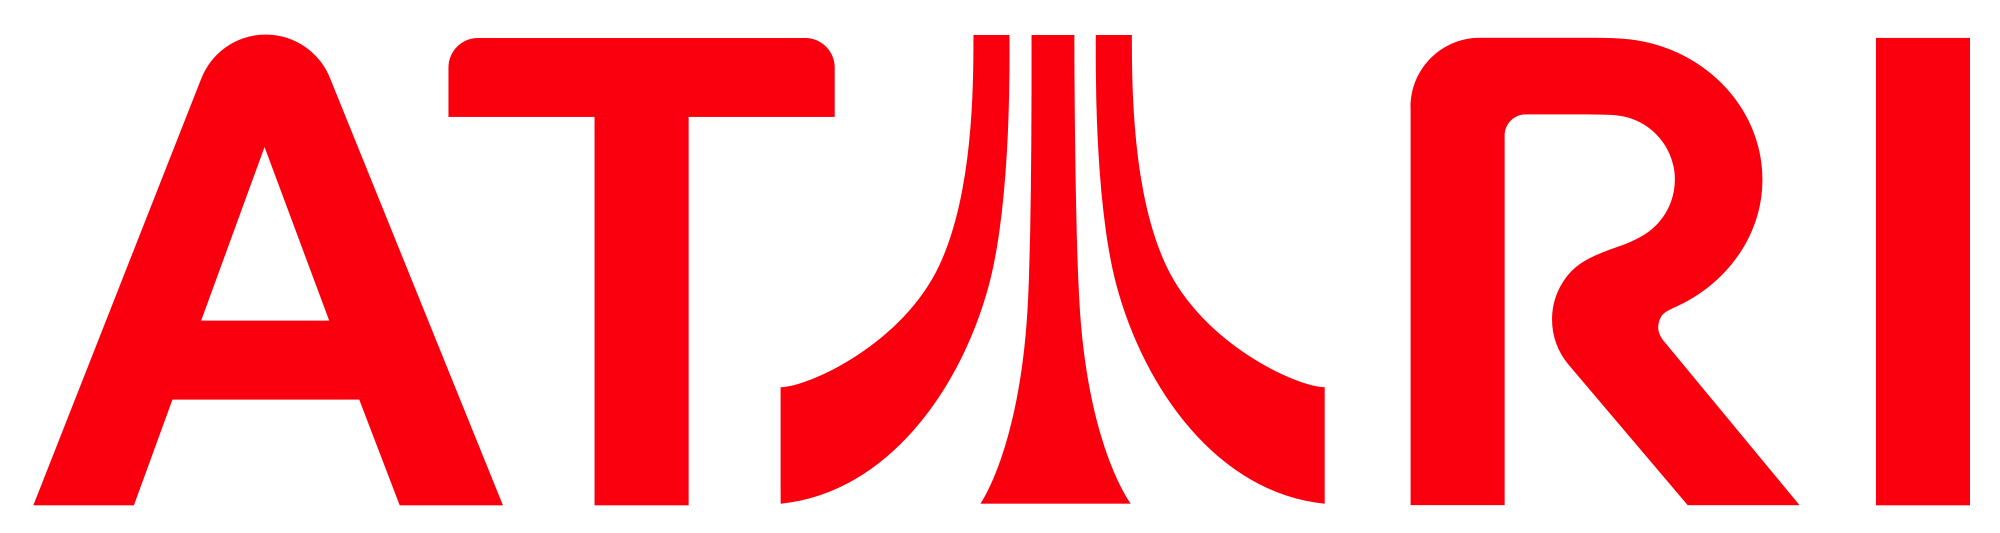 Atari Logo PNG-PlusPNG.com-37